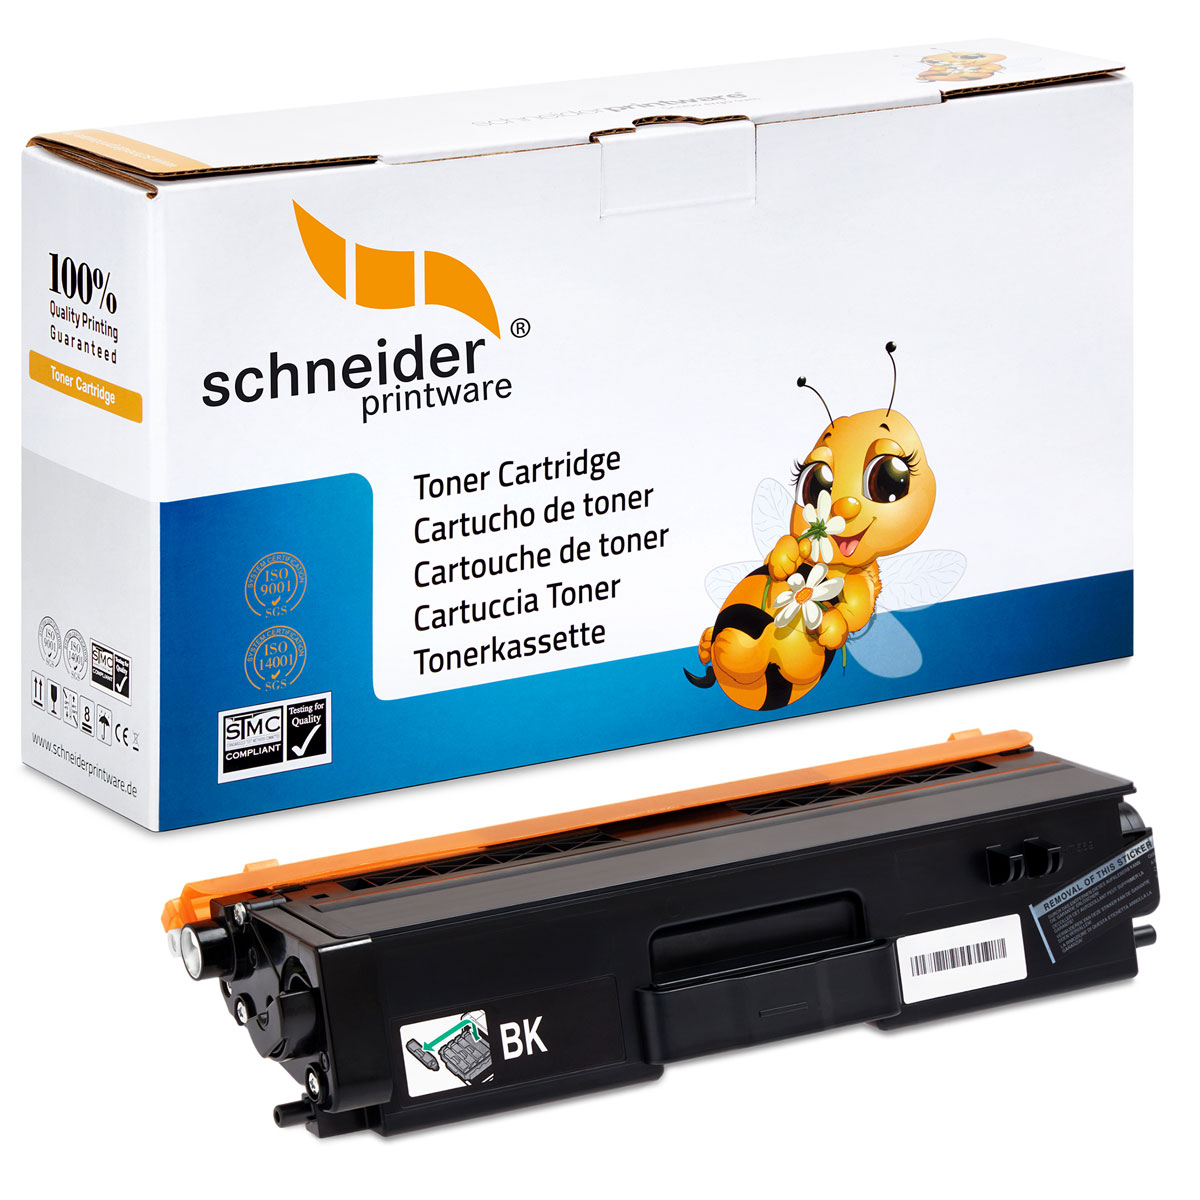 ersetzt Schneiderprintware Toner Brothern (TN-421) Toner TN-421 SCHNEIDERPRINTWARE BK Black